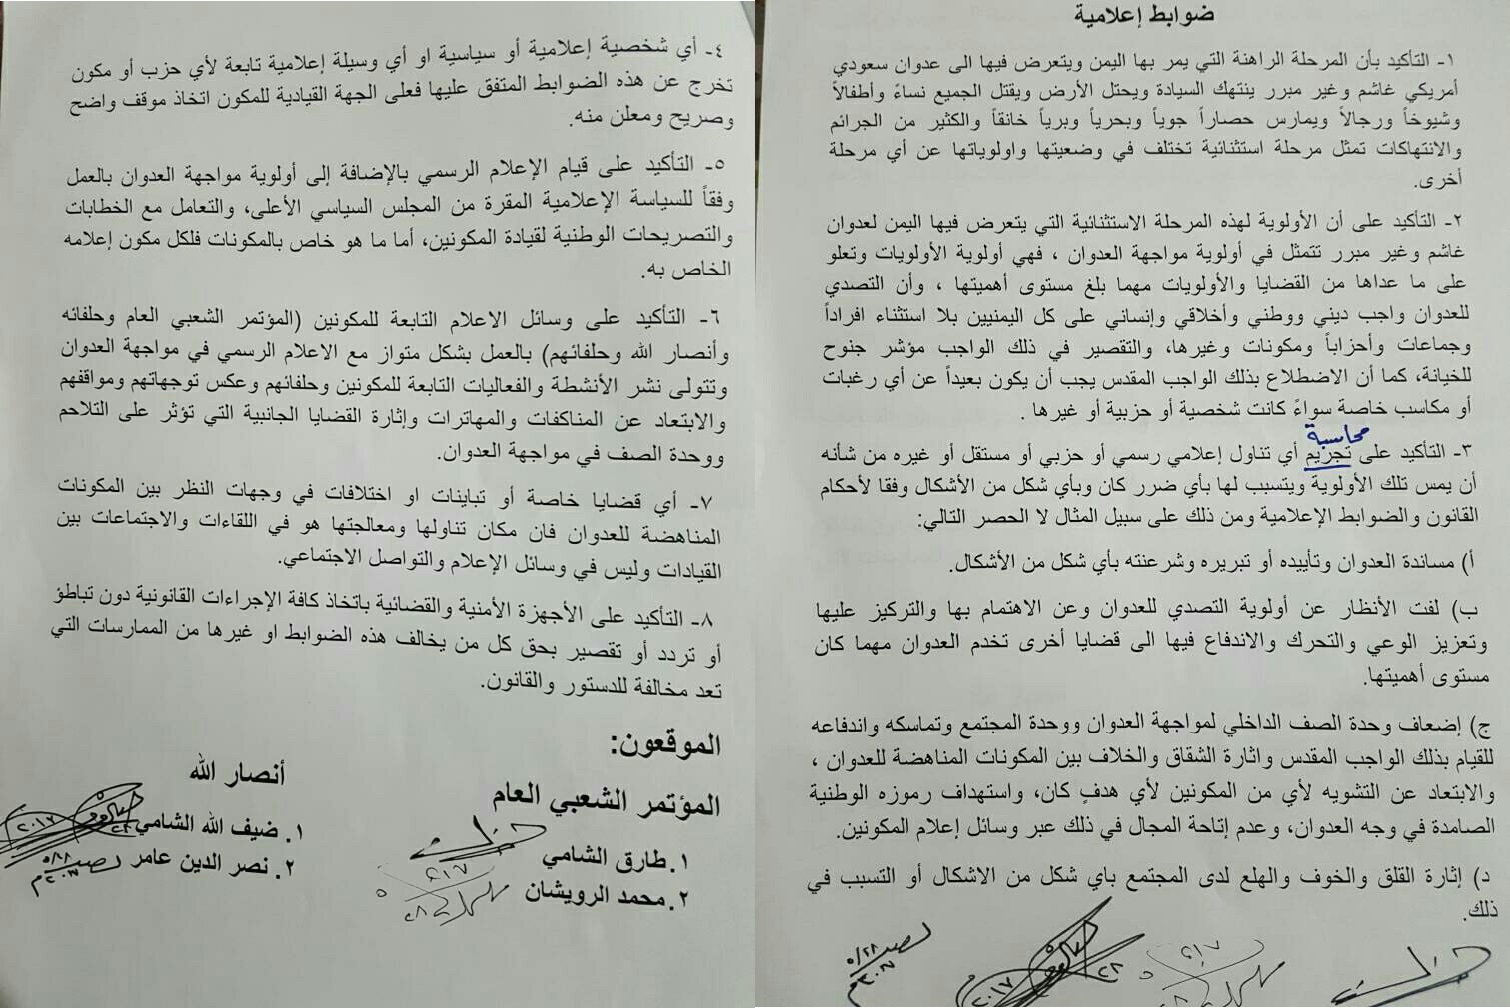 مؤتمر صالح والحوثيون يوقّعون اتفاقاً لتجريم ومحاسبة كل من ينتقد ممارسات تحالفهما